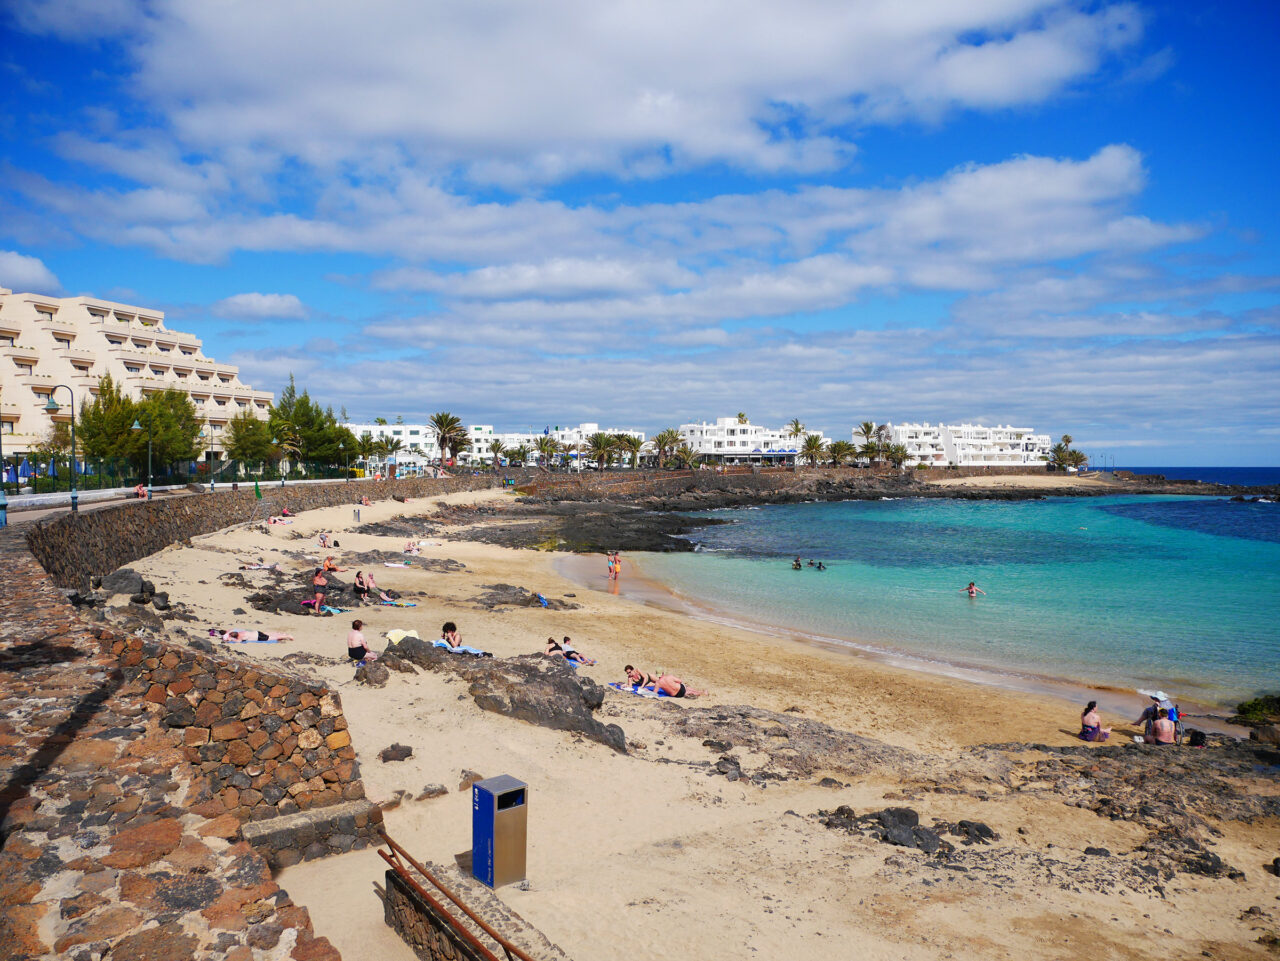 Costa Teguise beach Lanzarote